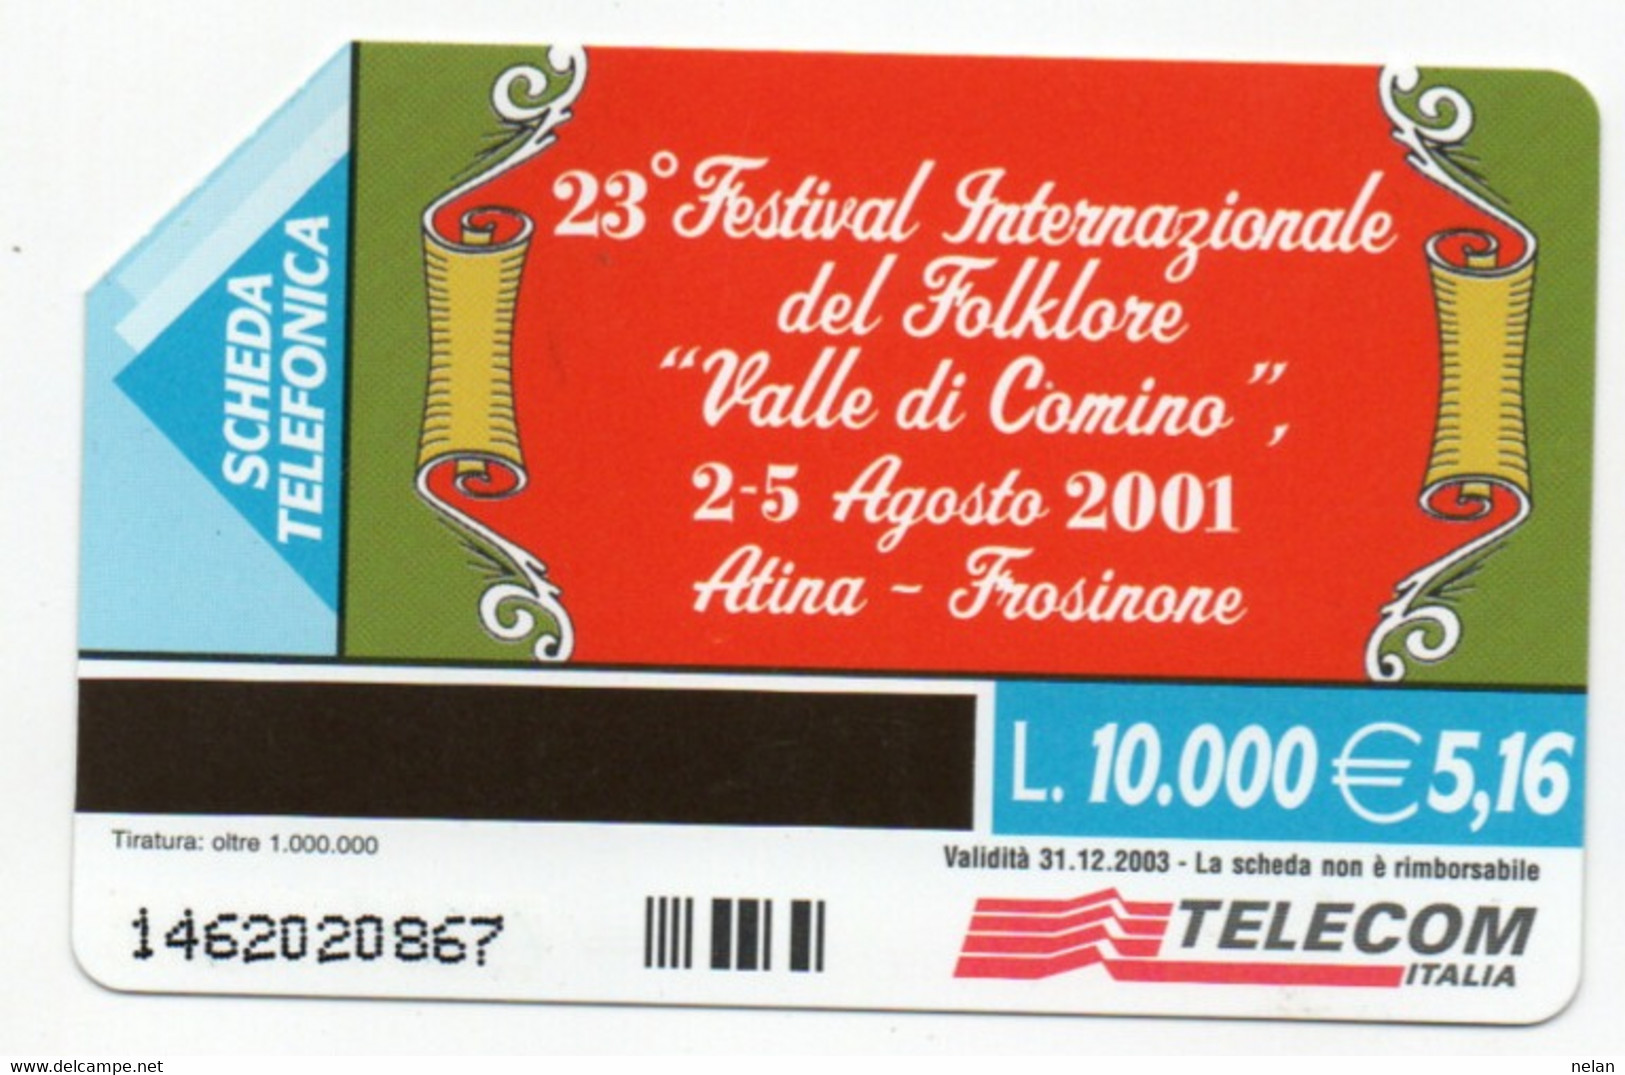 ITALIA - TELECOM - 23 FESTIVAL INTERNAZIONALE DEL FOLKLORE VALLE DI COMINO 2001 - ATINA - FROSINONE - Cultural